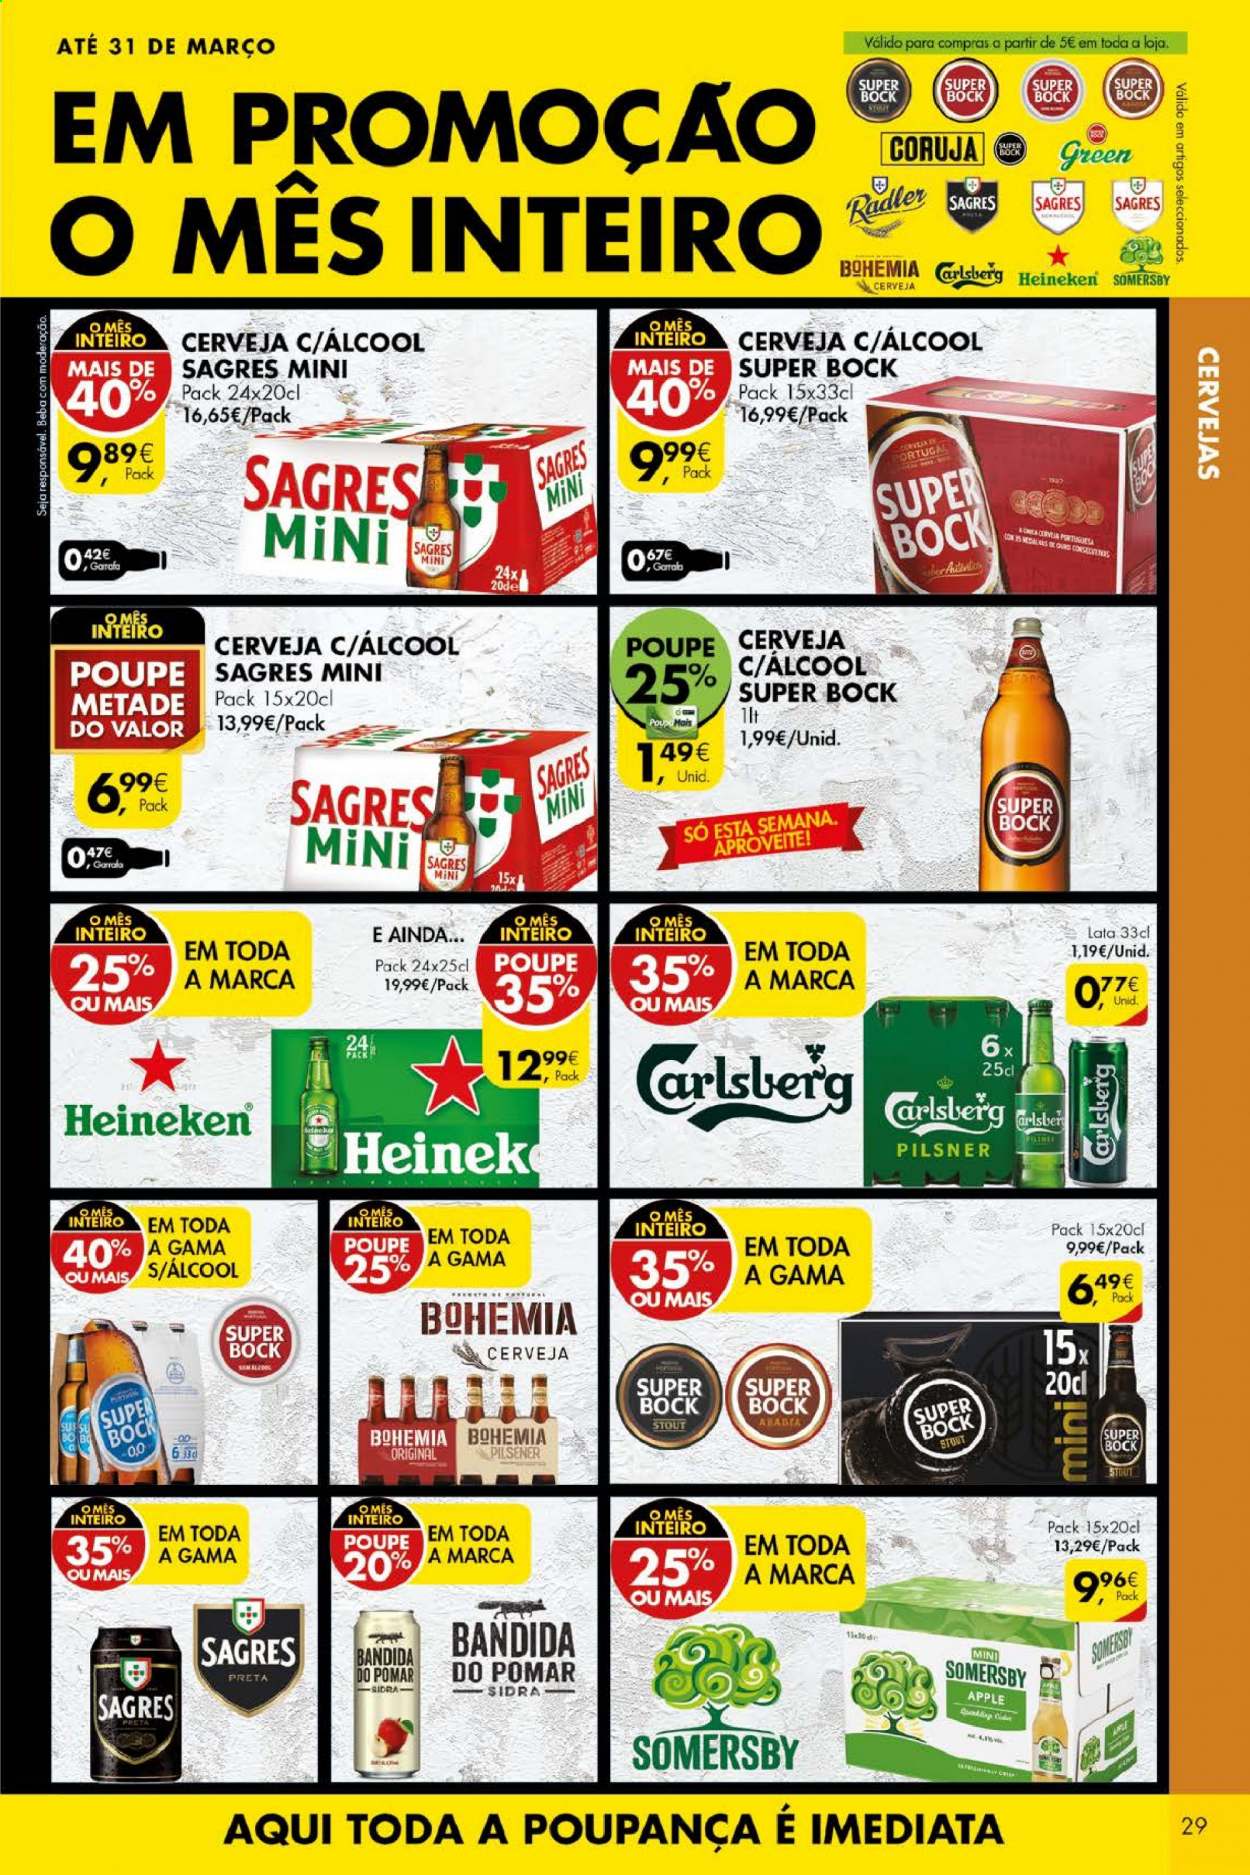 thumbnail - Folheto Pingo Doce - 16.3.2021 - 22.3.2021 - Produtos em promoção - Heineken, Sagres, Super Bock, sidra, Apple. Página 29.